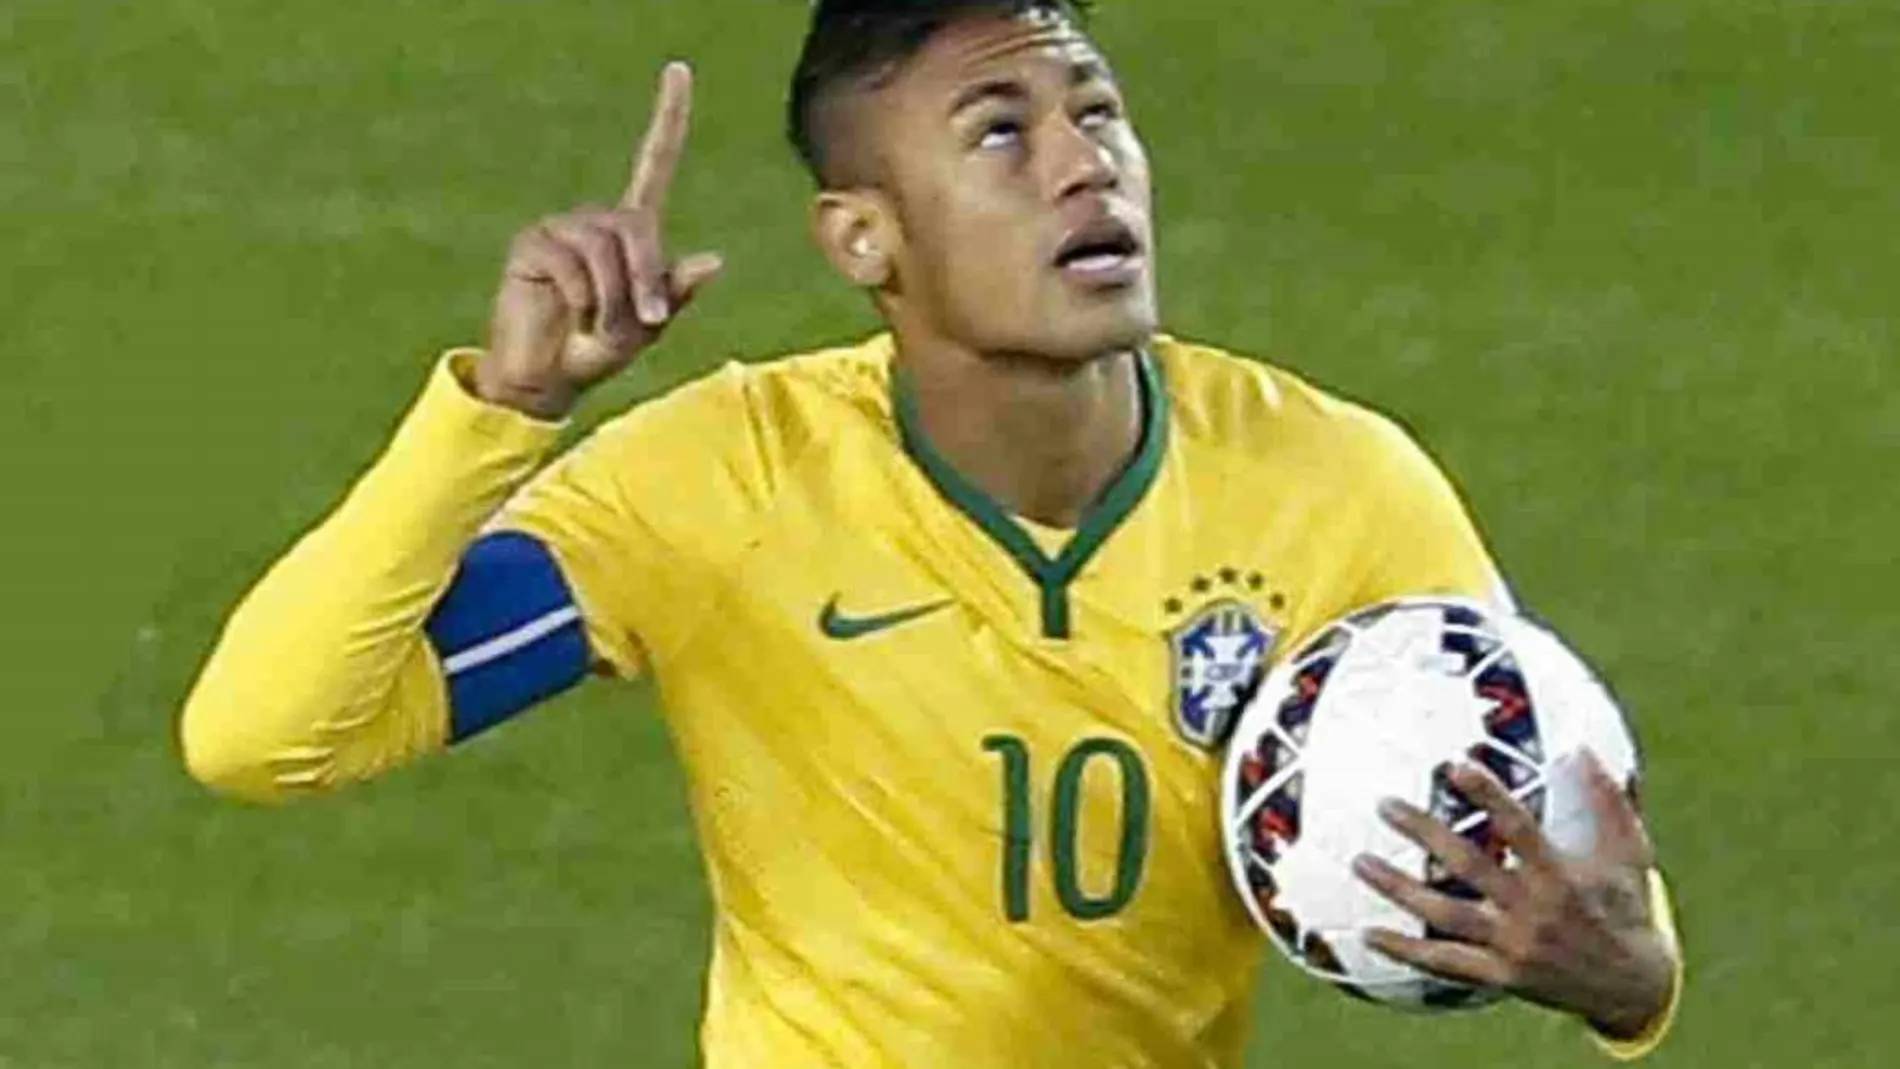 El delantero brasileño Neymar jr. celebra un gol con la camiseta de Brasil el pasado año.